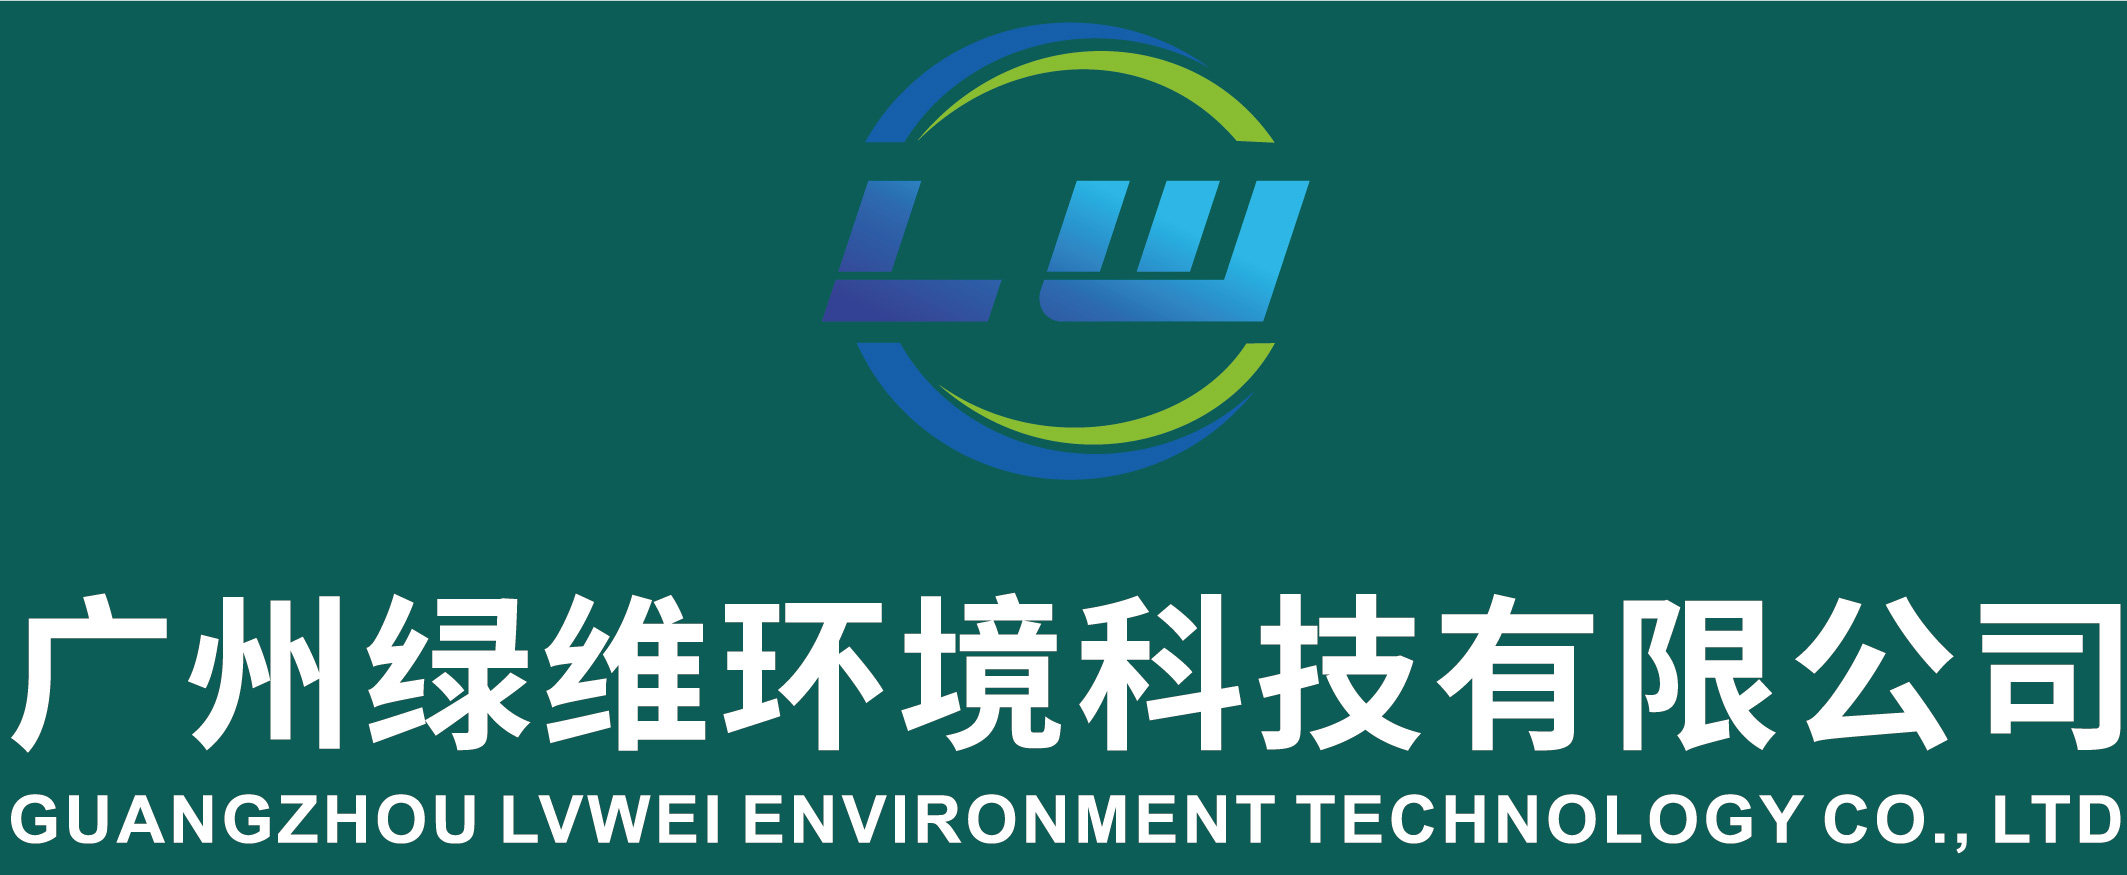 廣州綠維環境科技有限公司